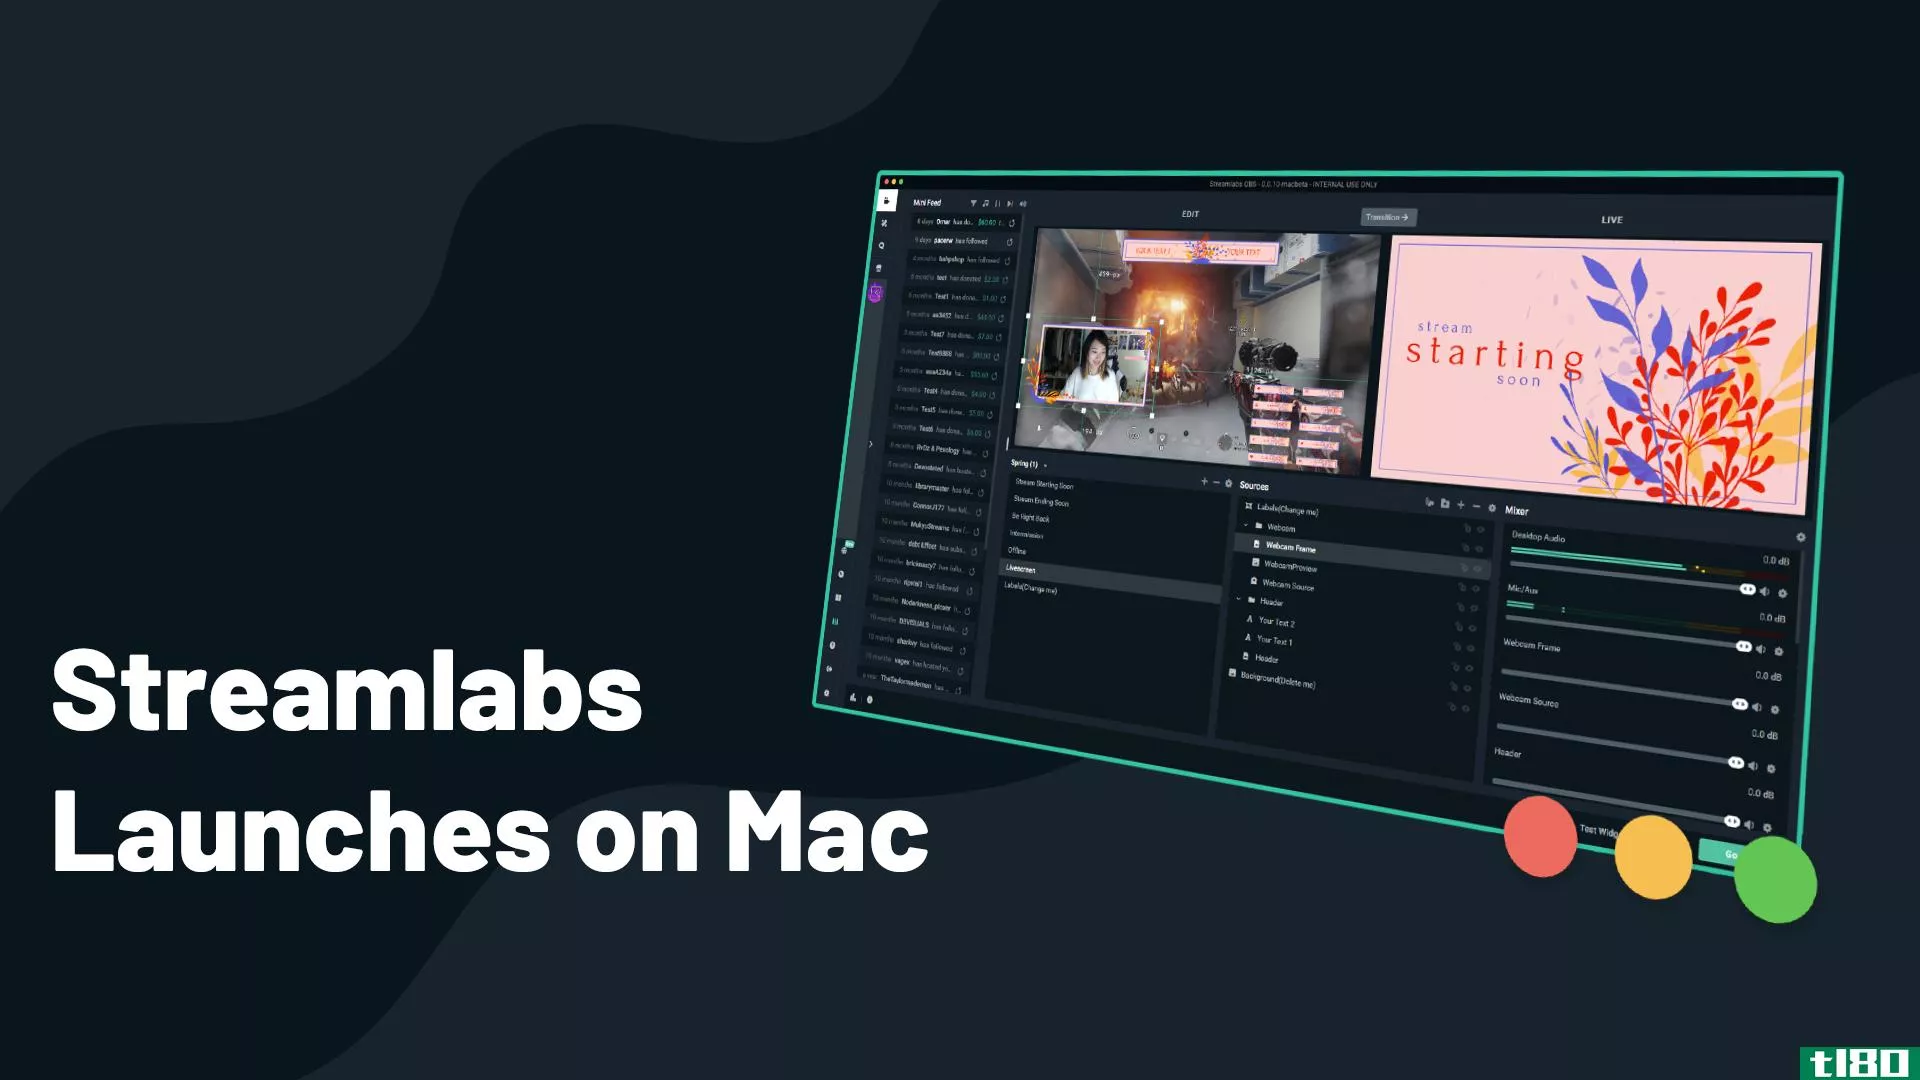 流行的流媒体软件streamlabs obs今天在mac上发布